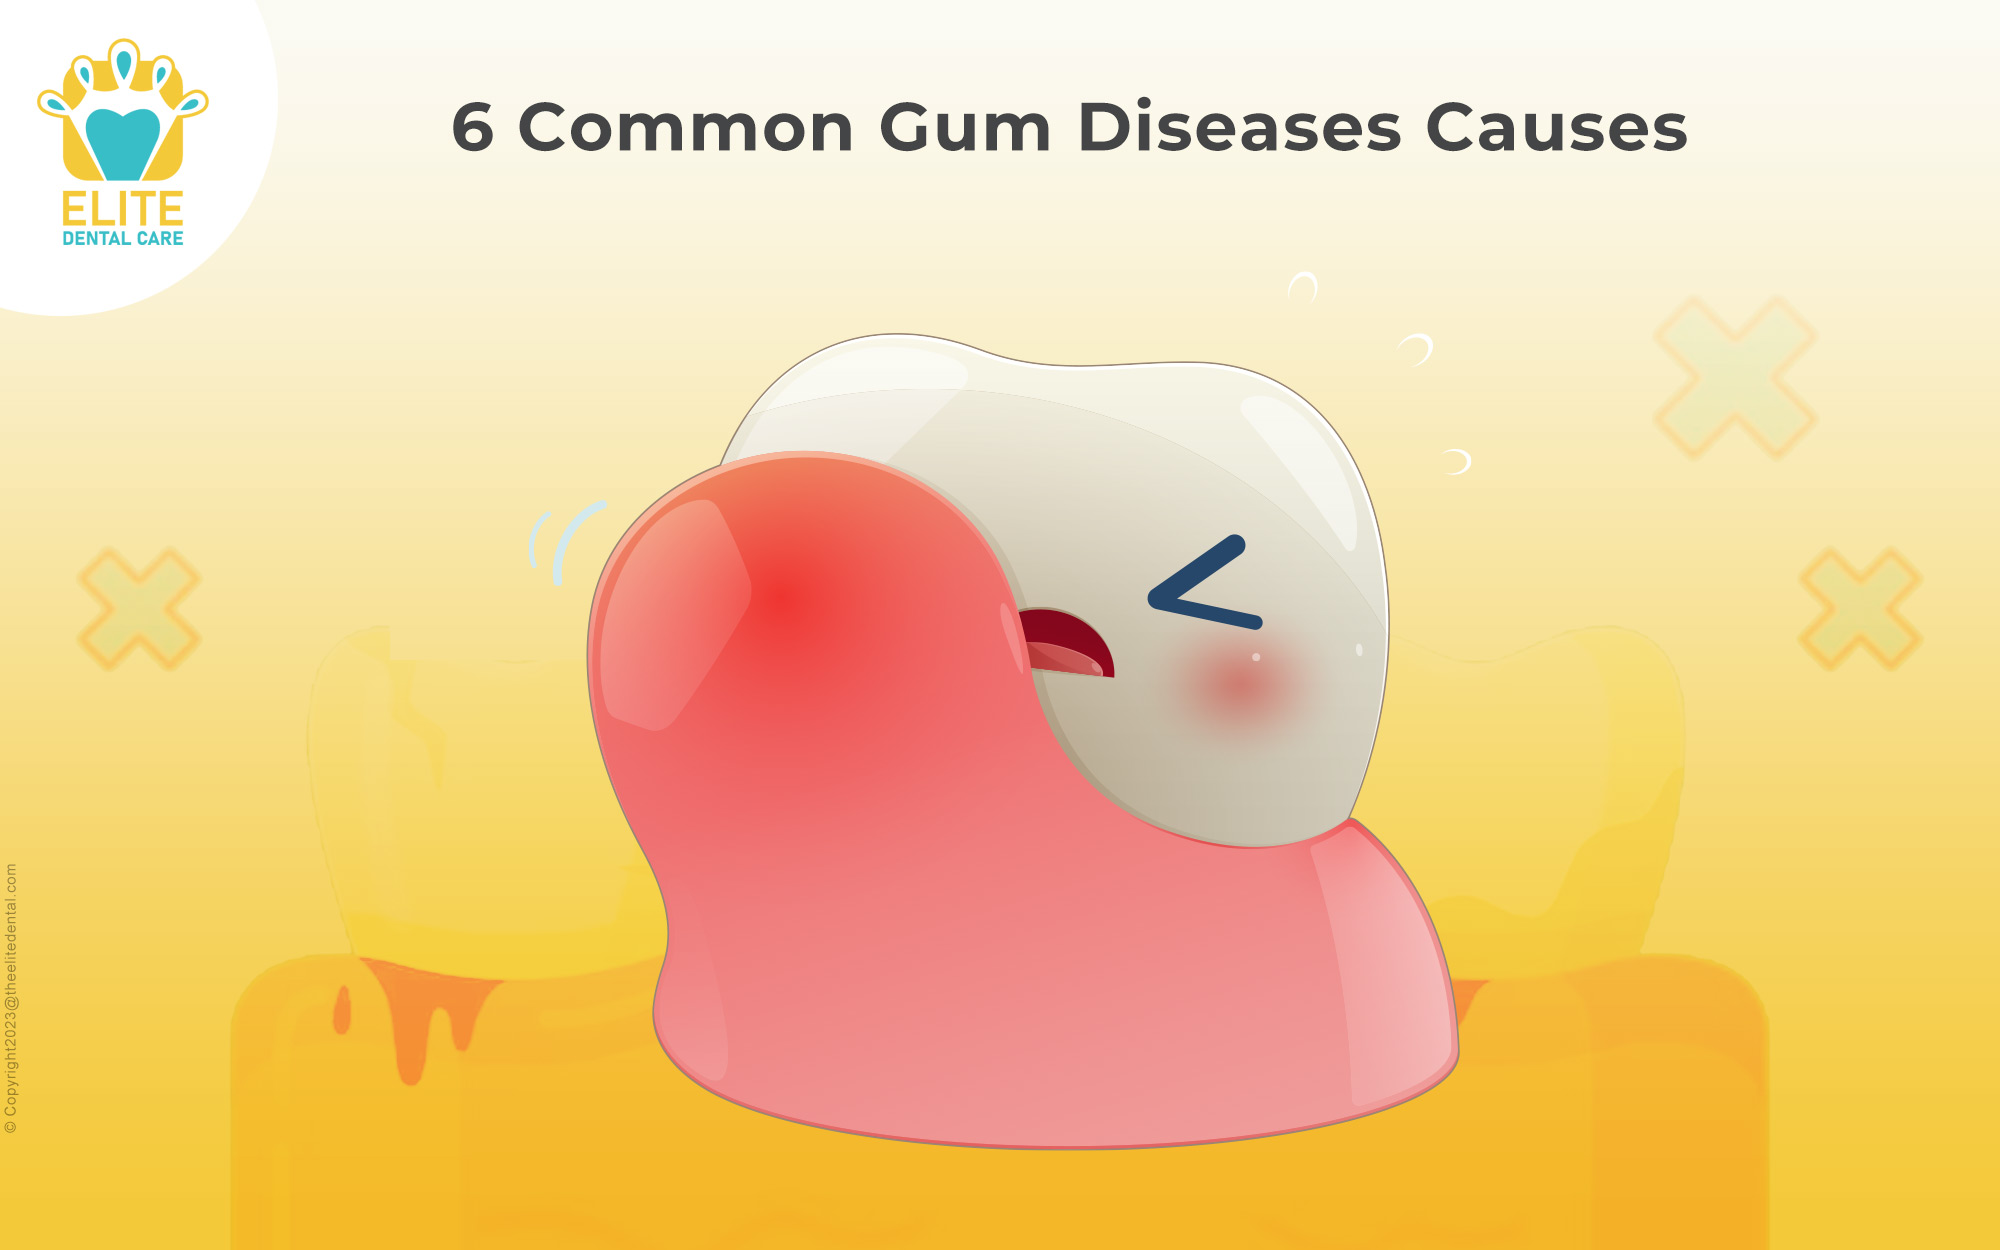 6 Common Gum Diseases Causes